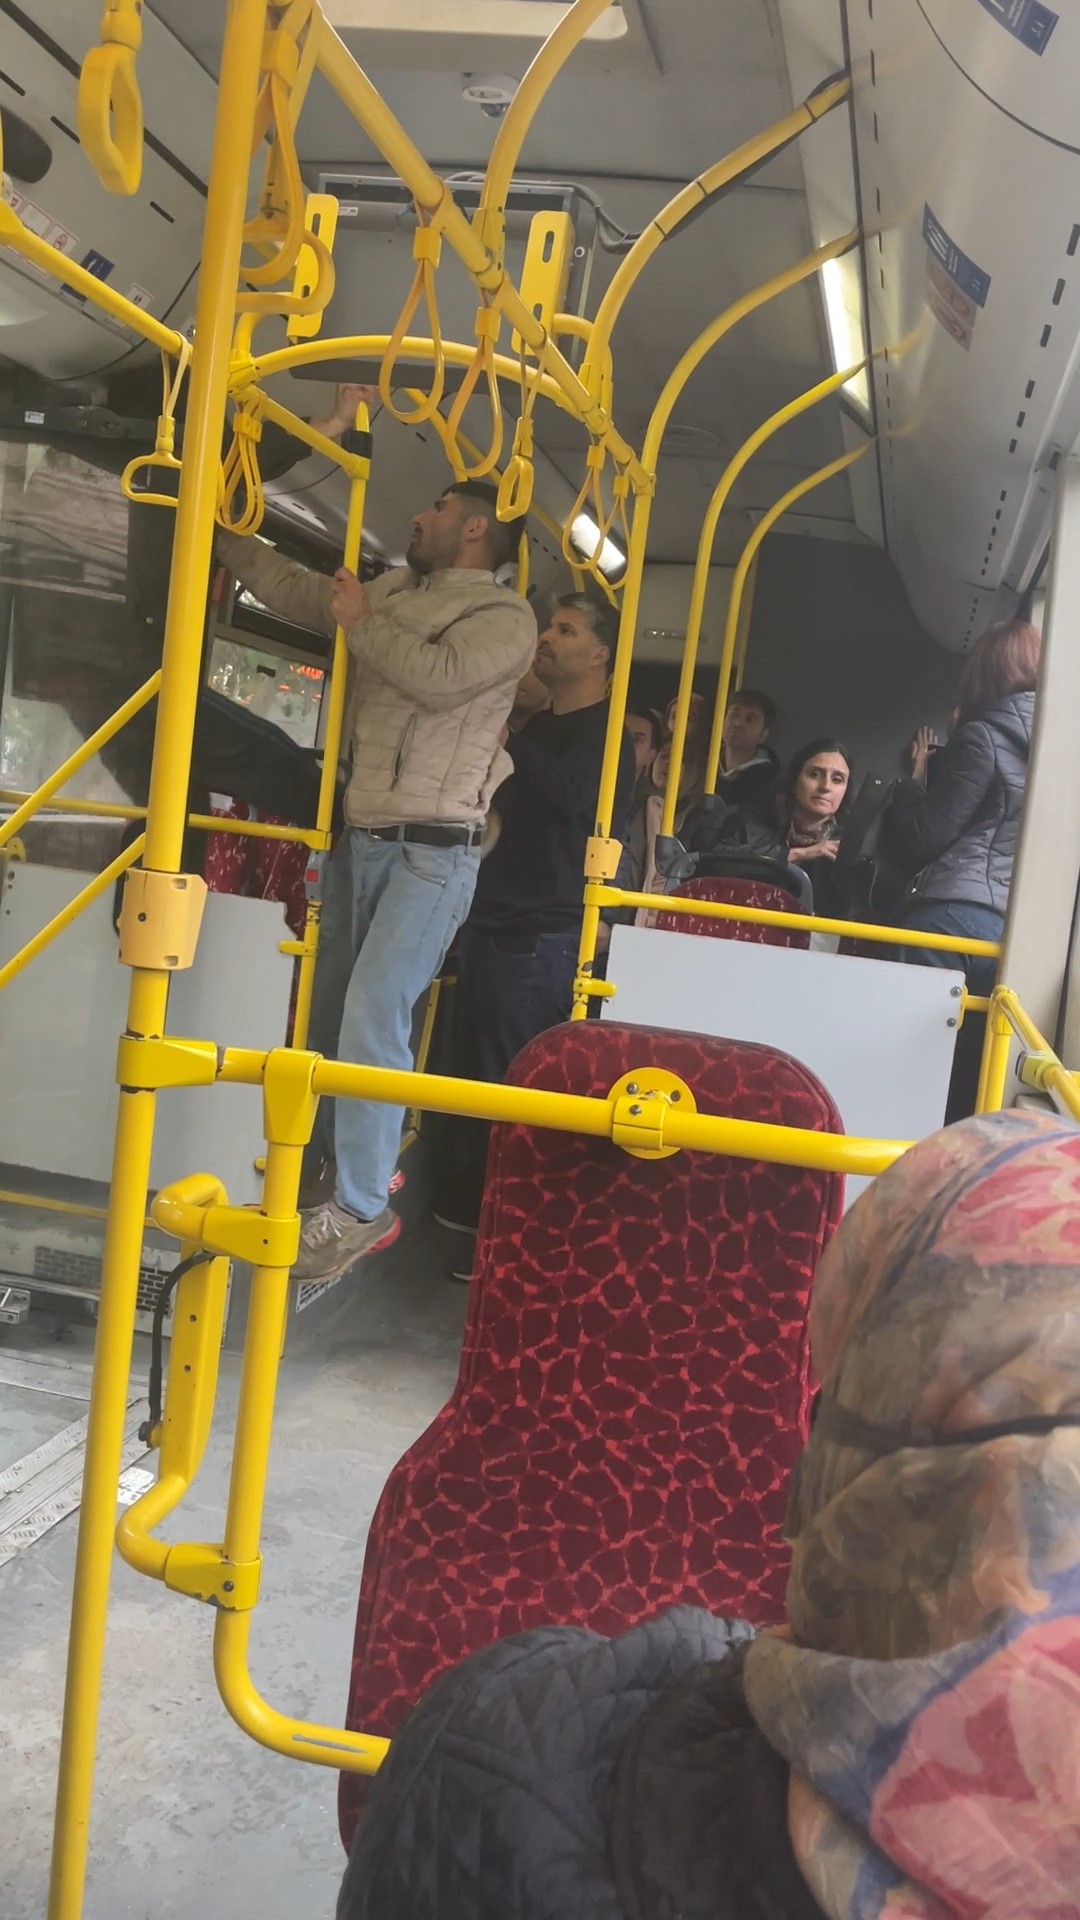 Kadıköy'de otobüs koltuğunda tek oturmak isteyen şahıs, yanına başka bir yolcunun gelmesiyle sinirlenerek taşkınlık çıkardı.